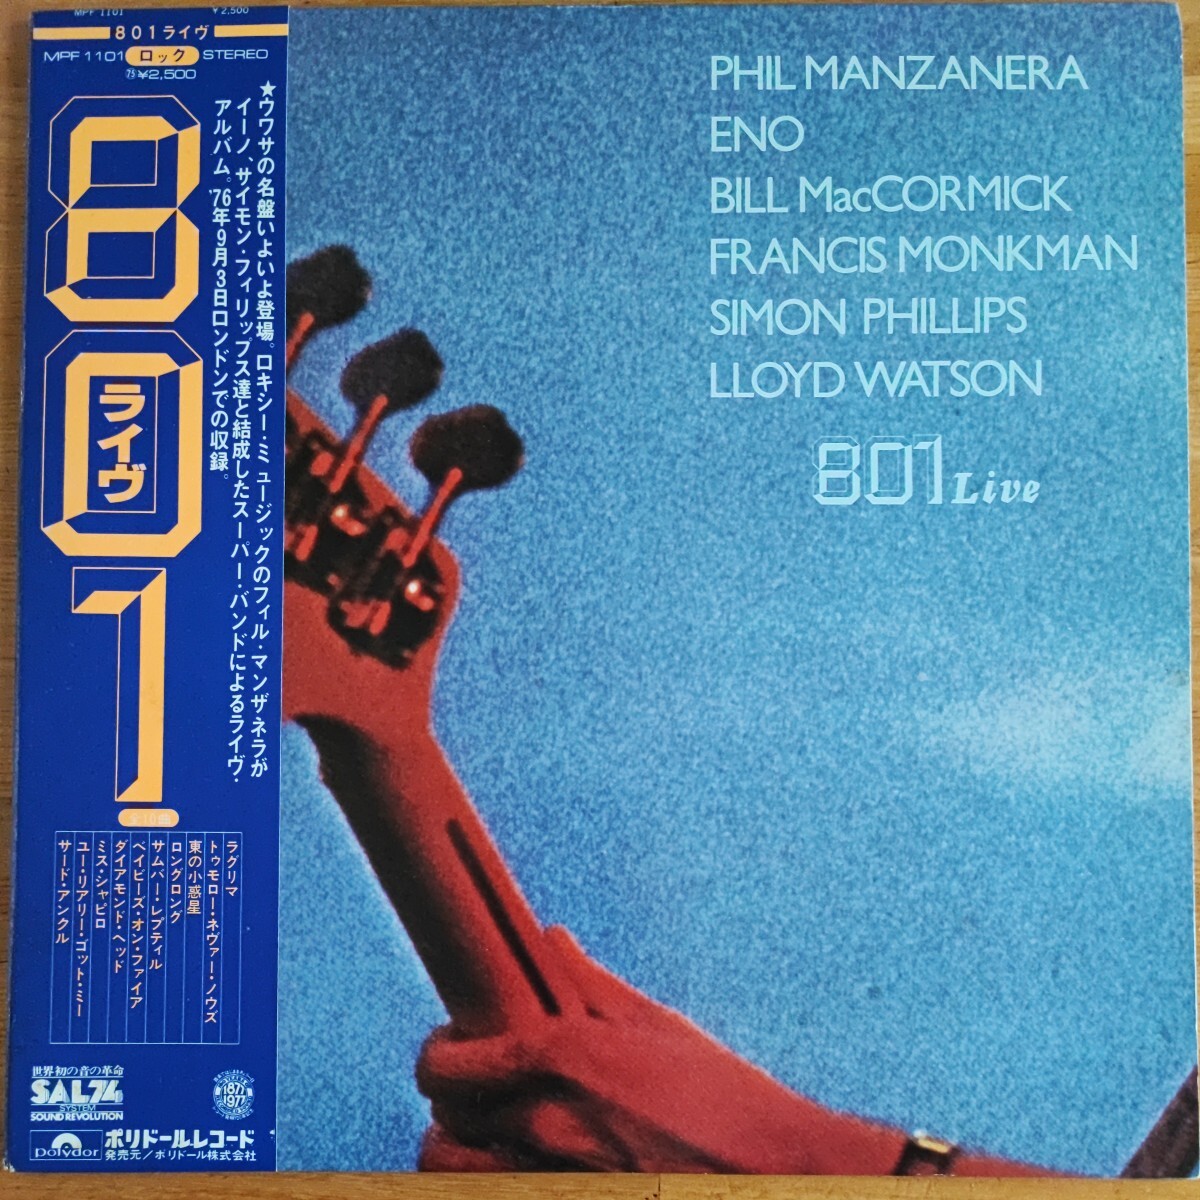 801「801 Live」LP日本盤帯付